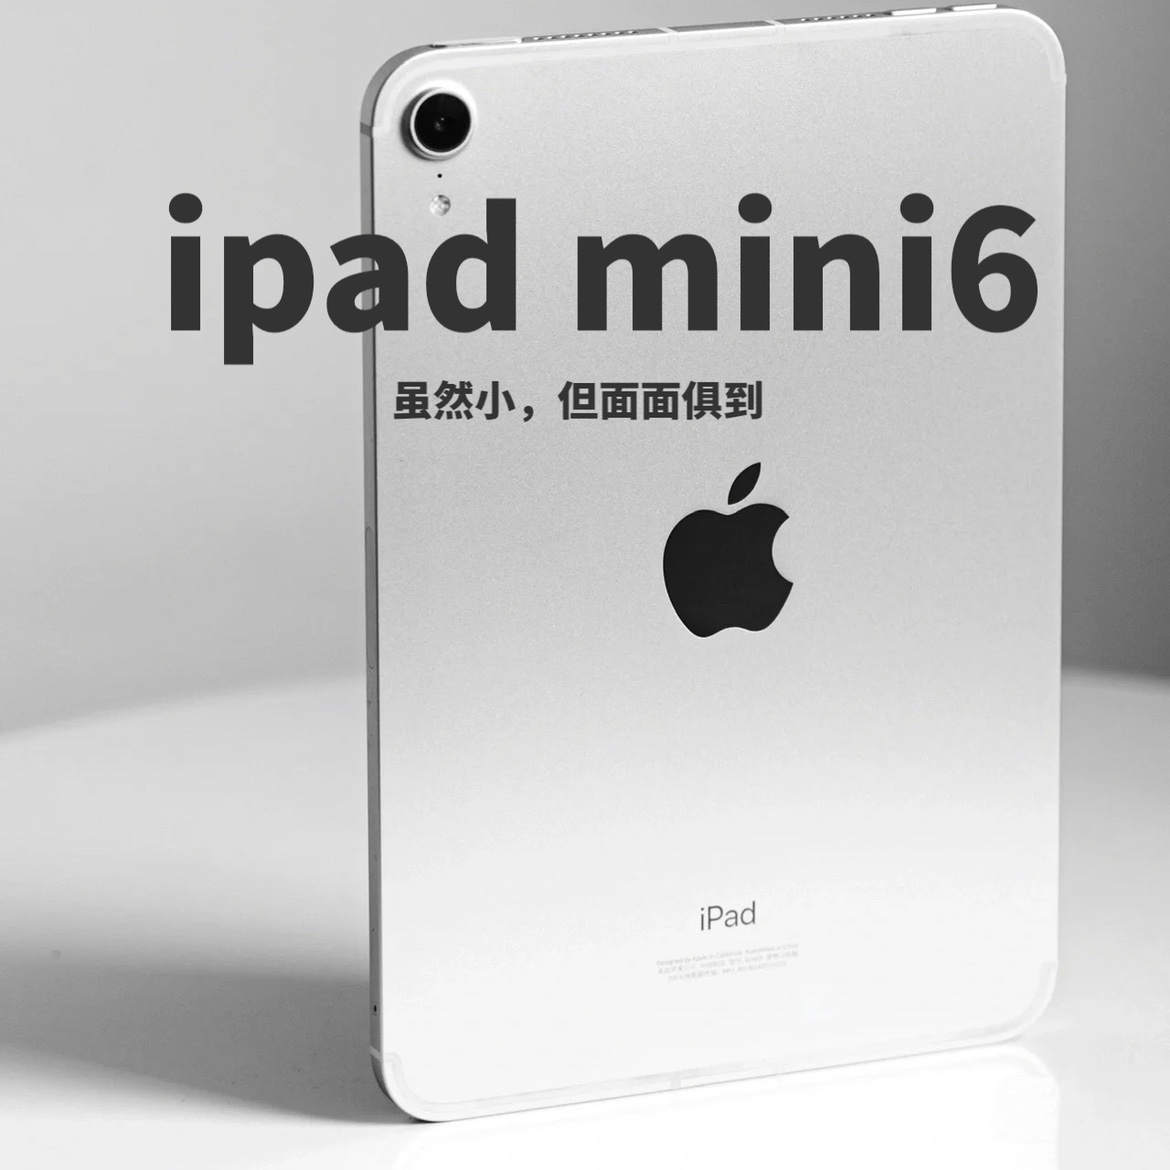 苹果今年会发布新款的iPad吗？iPad新品前瞻